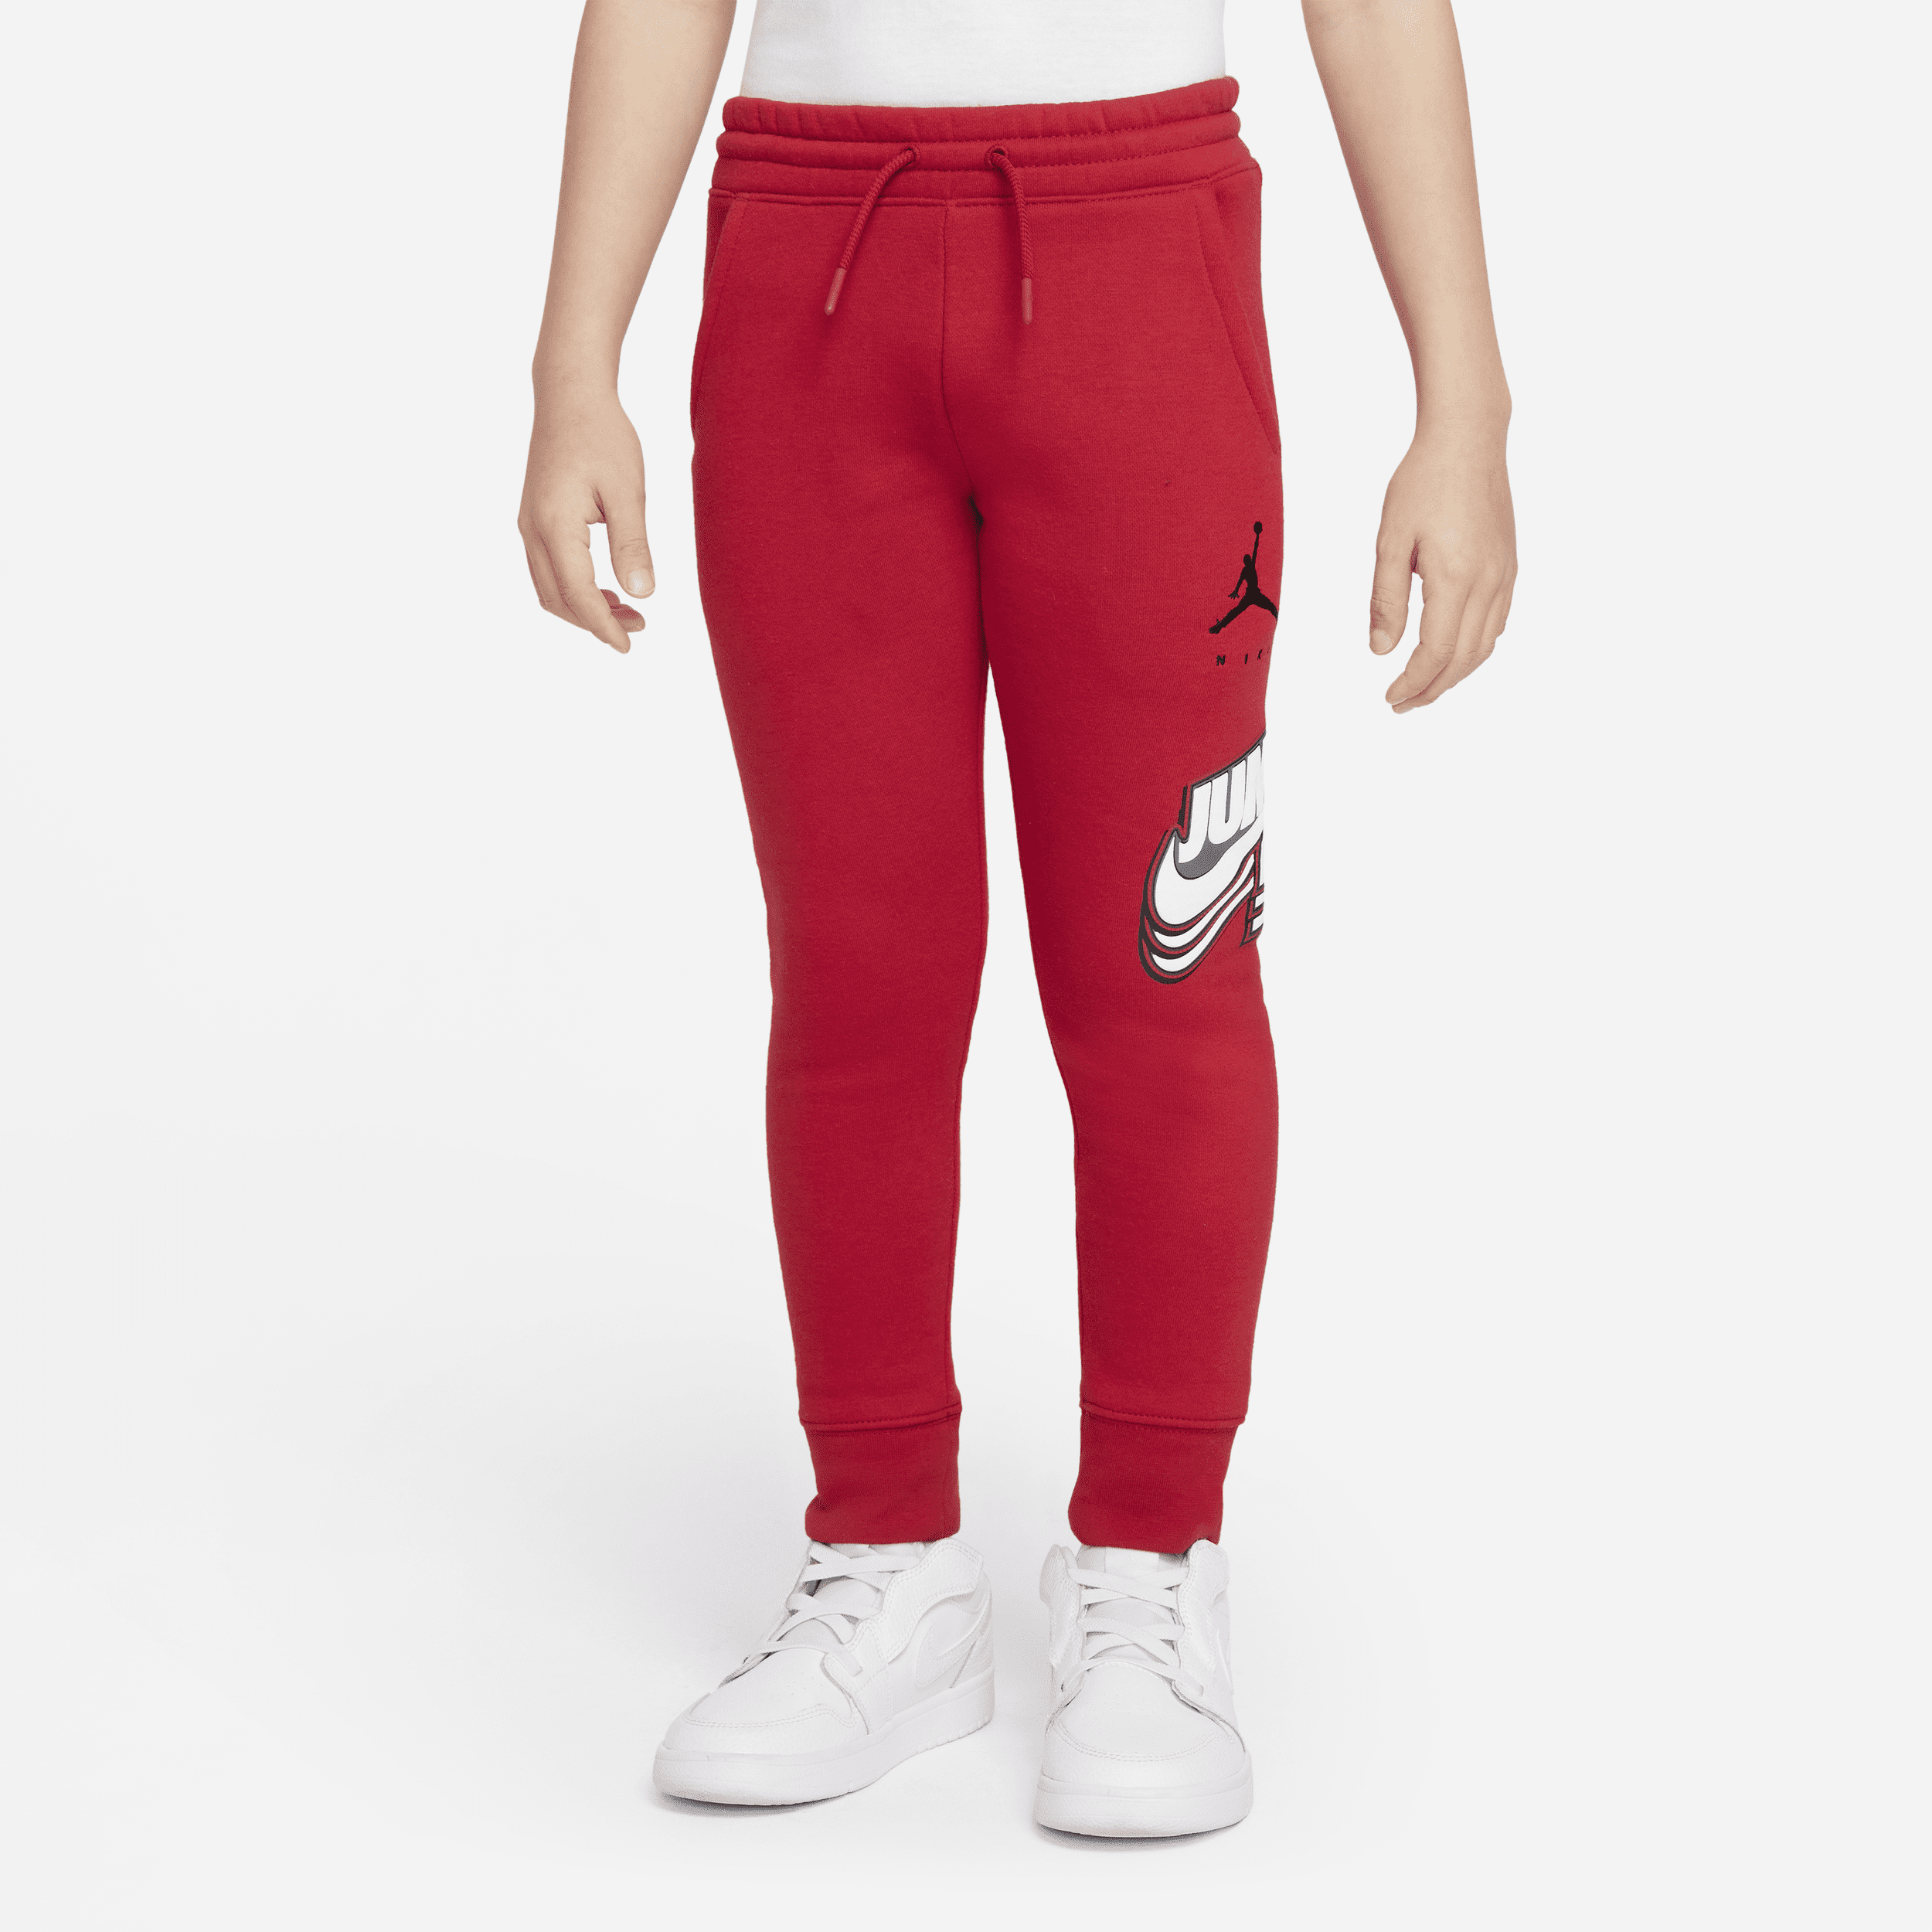 Nike Pantaloni Jordan - Bambini - Rosso